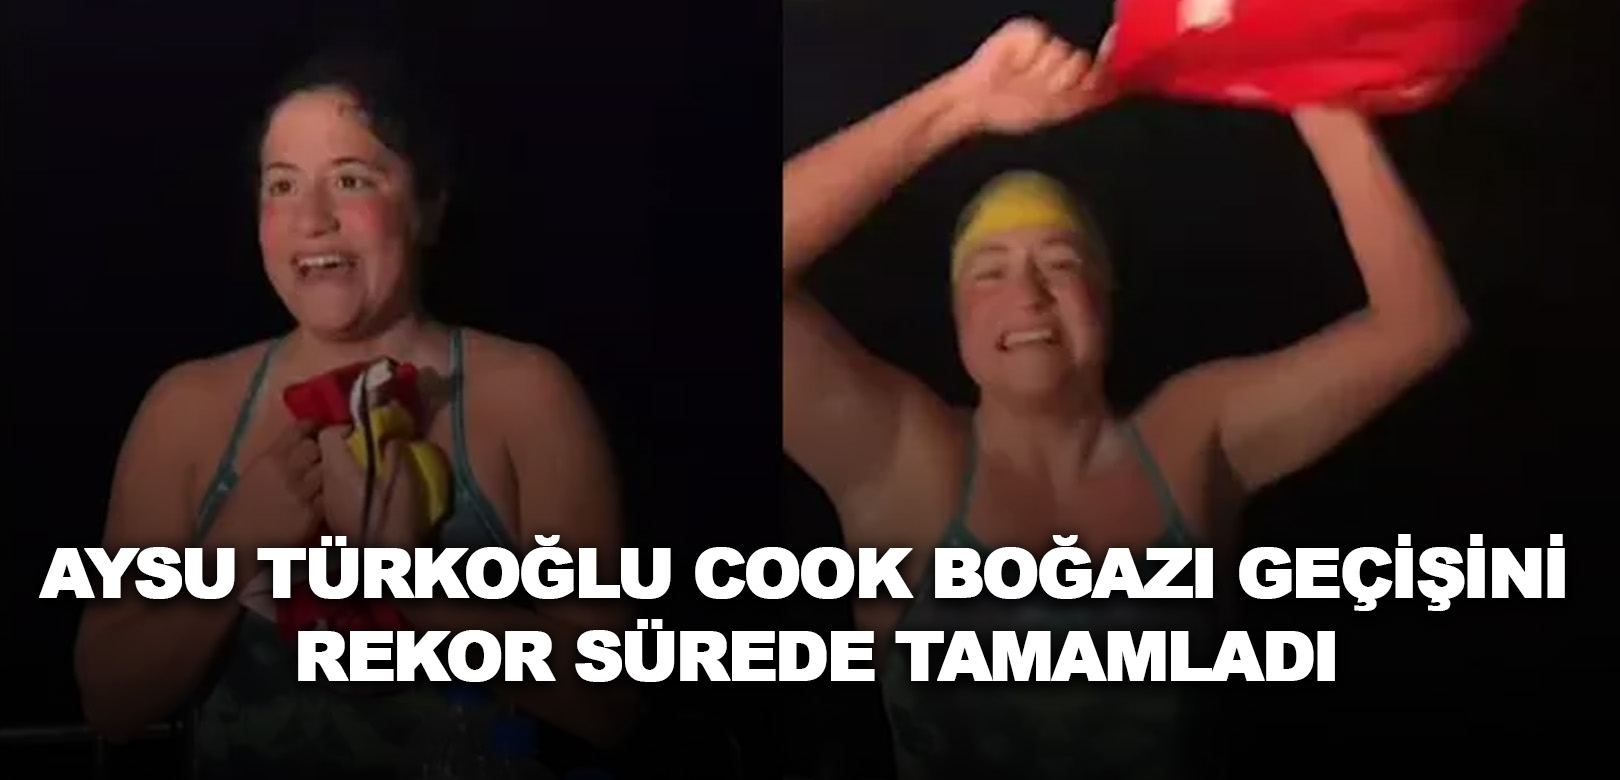 Aysu Türkoğlu Cook Boğazı geçişini rekor sürede tamamladı